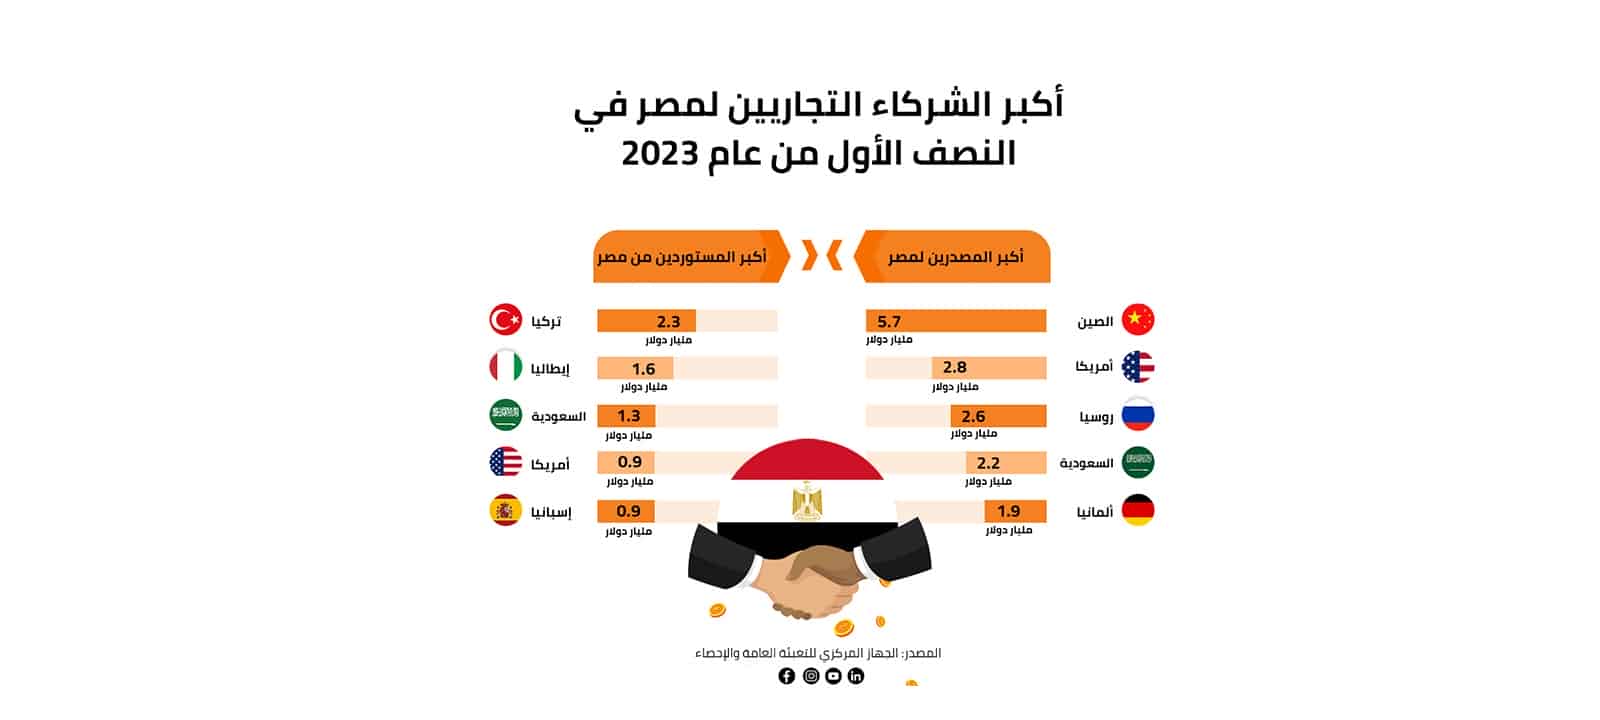 أكبر الشركاء التجاريين لمصر في النصف الأول من 2023 